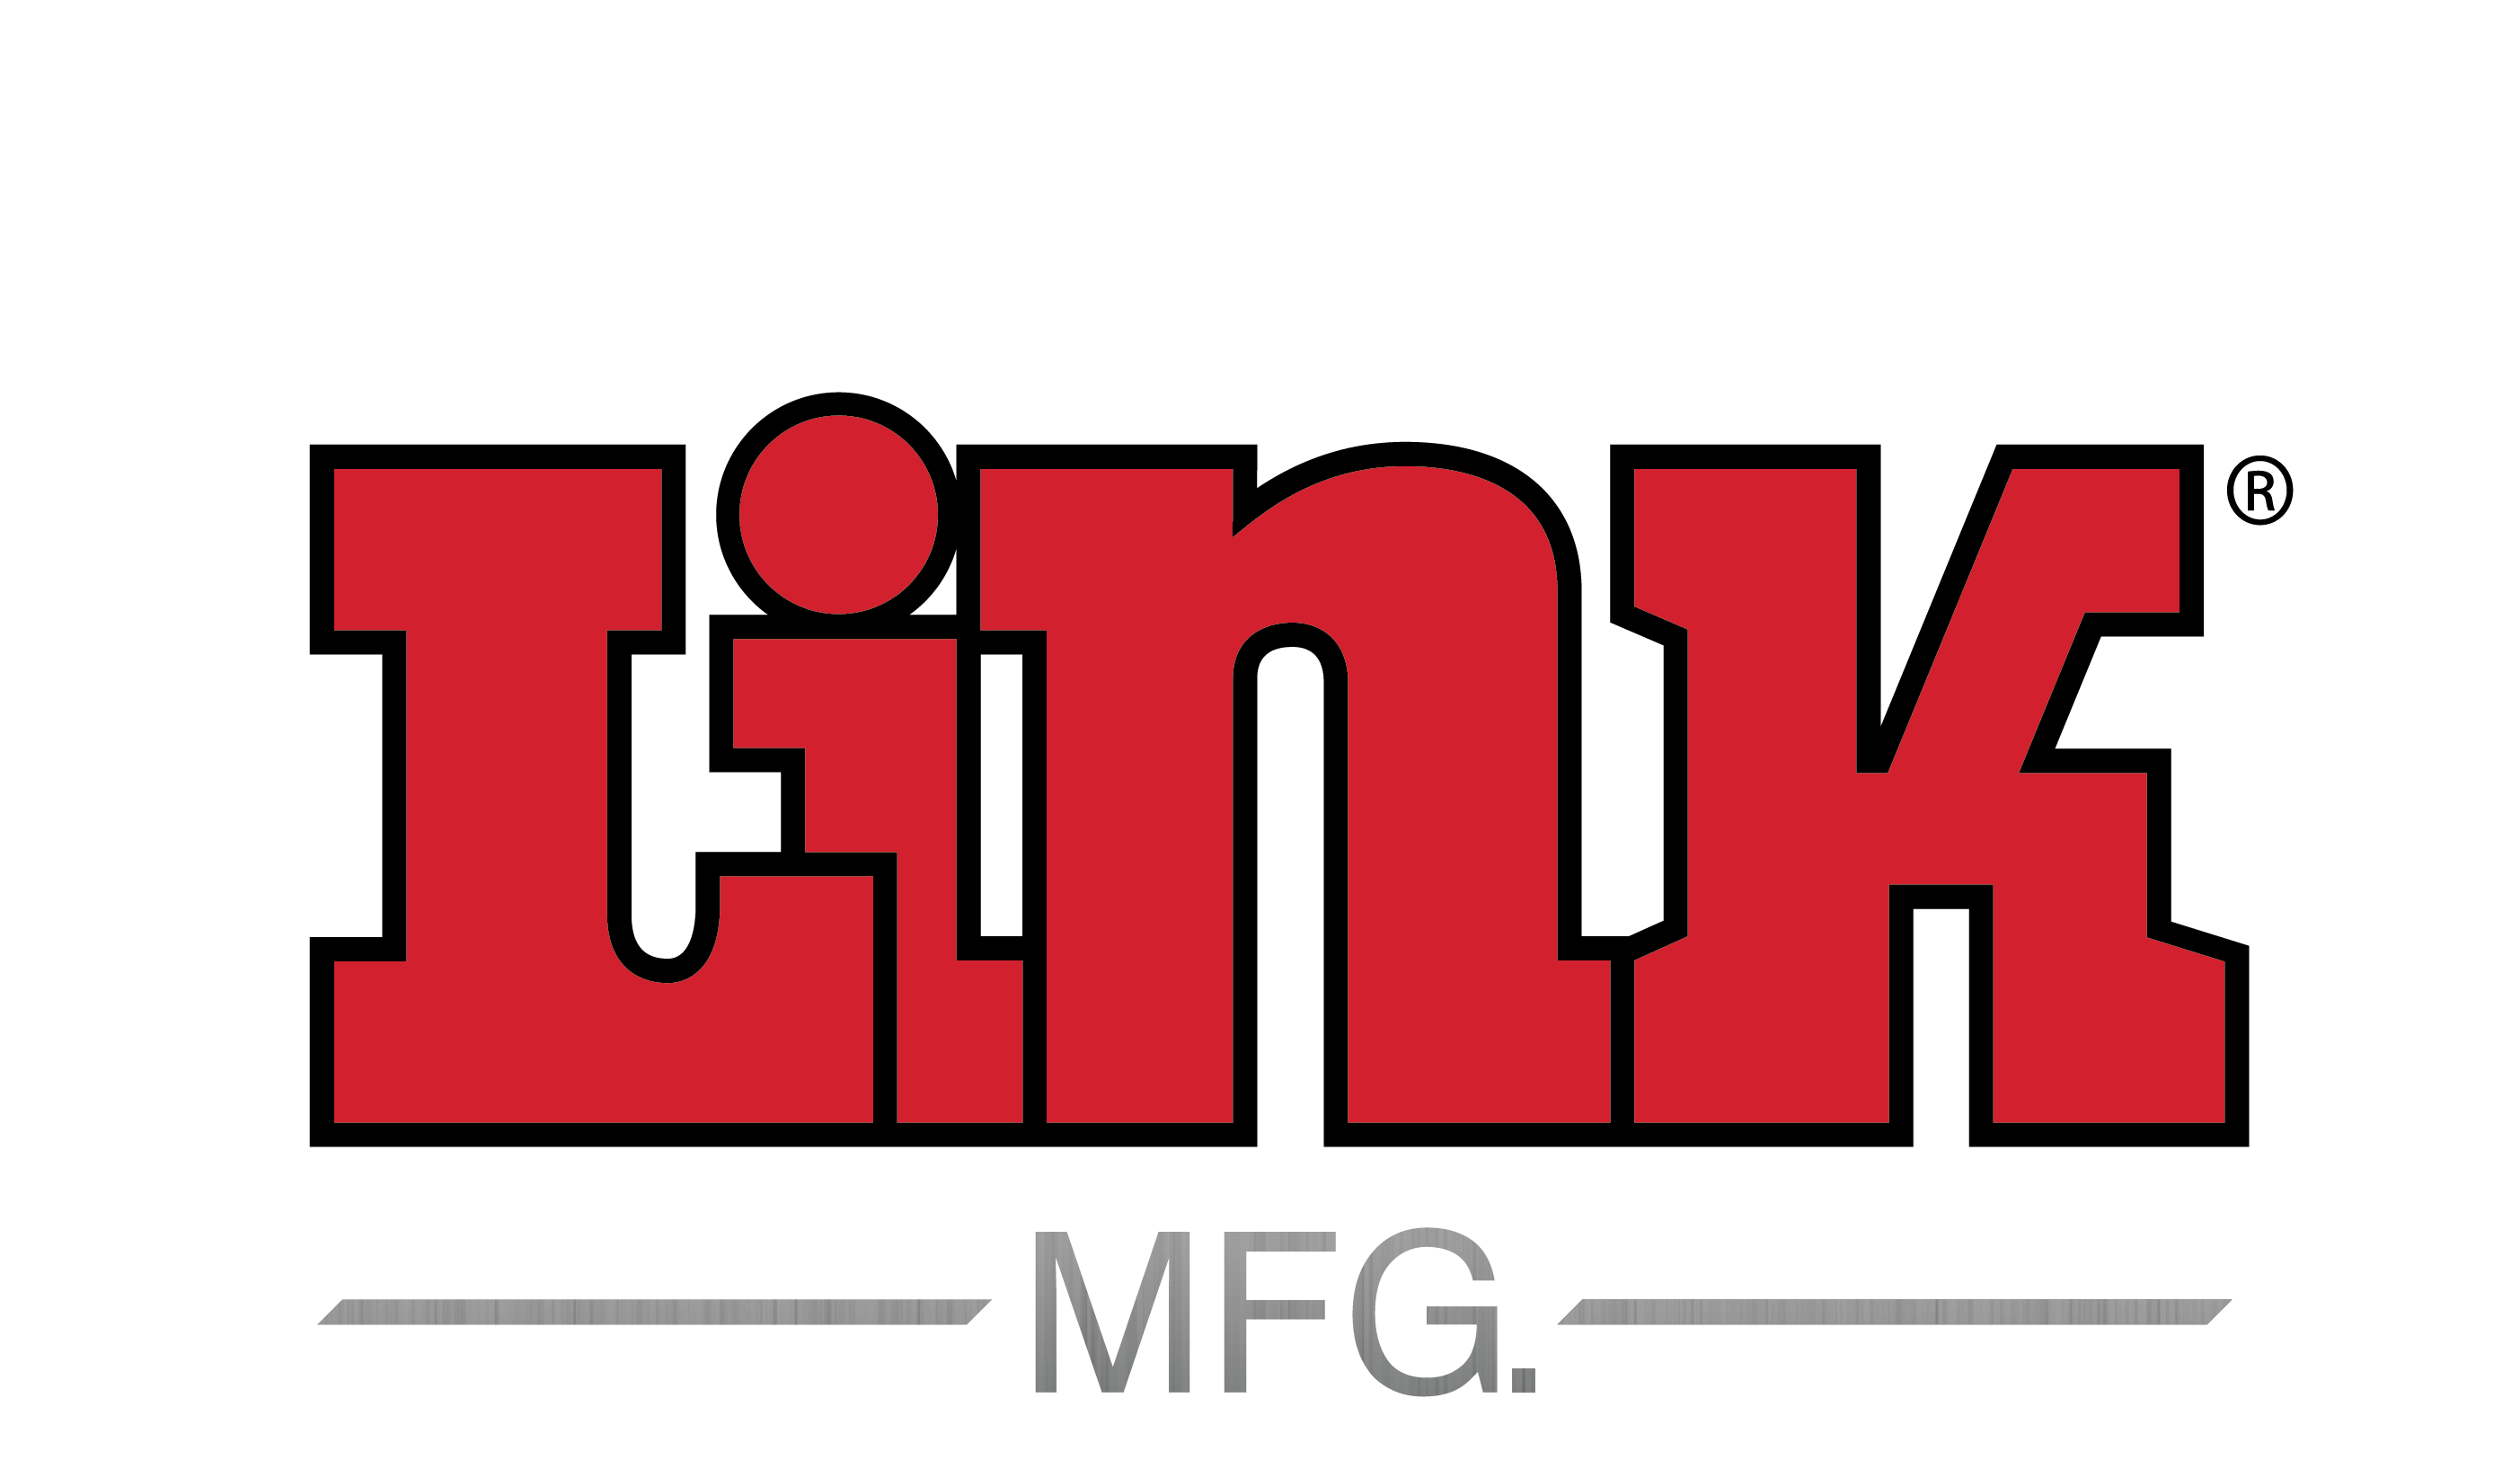 Link Logo - Link Logo with MFG - Link